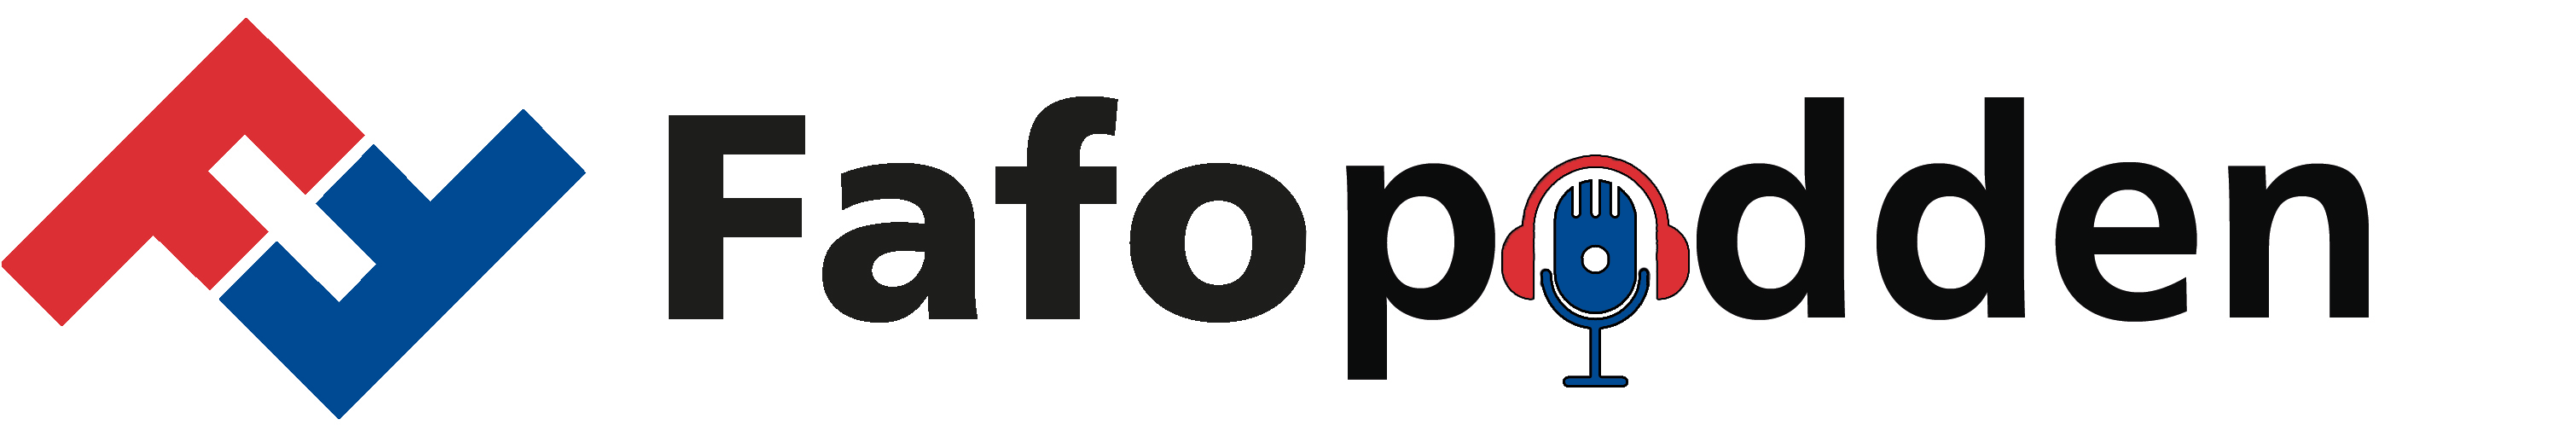 Fafopodden logo mik